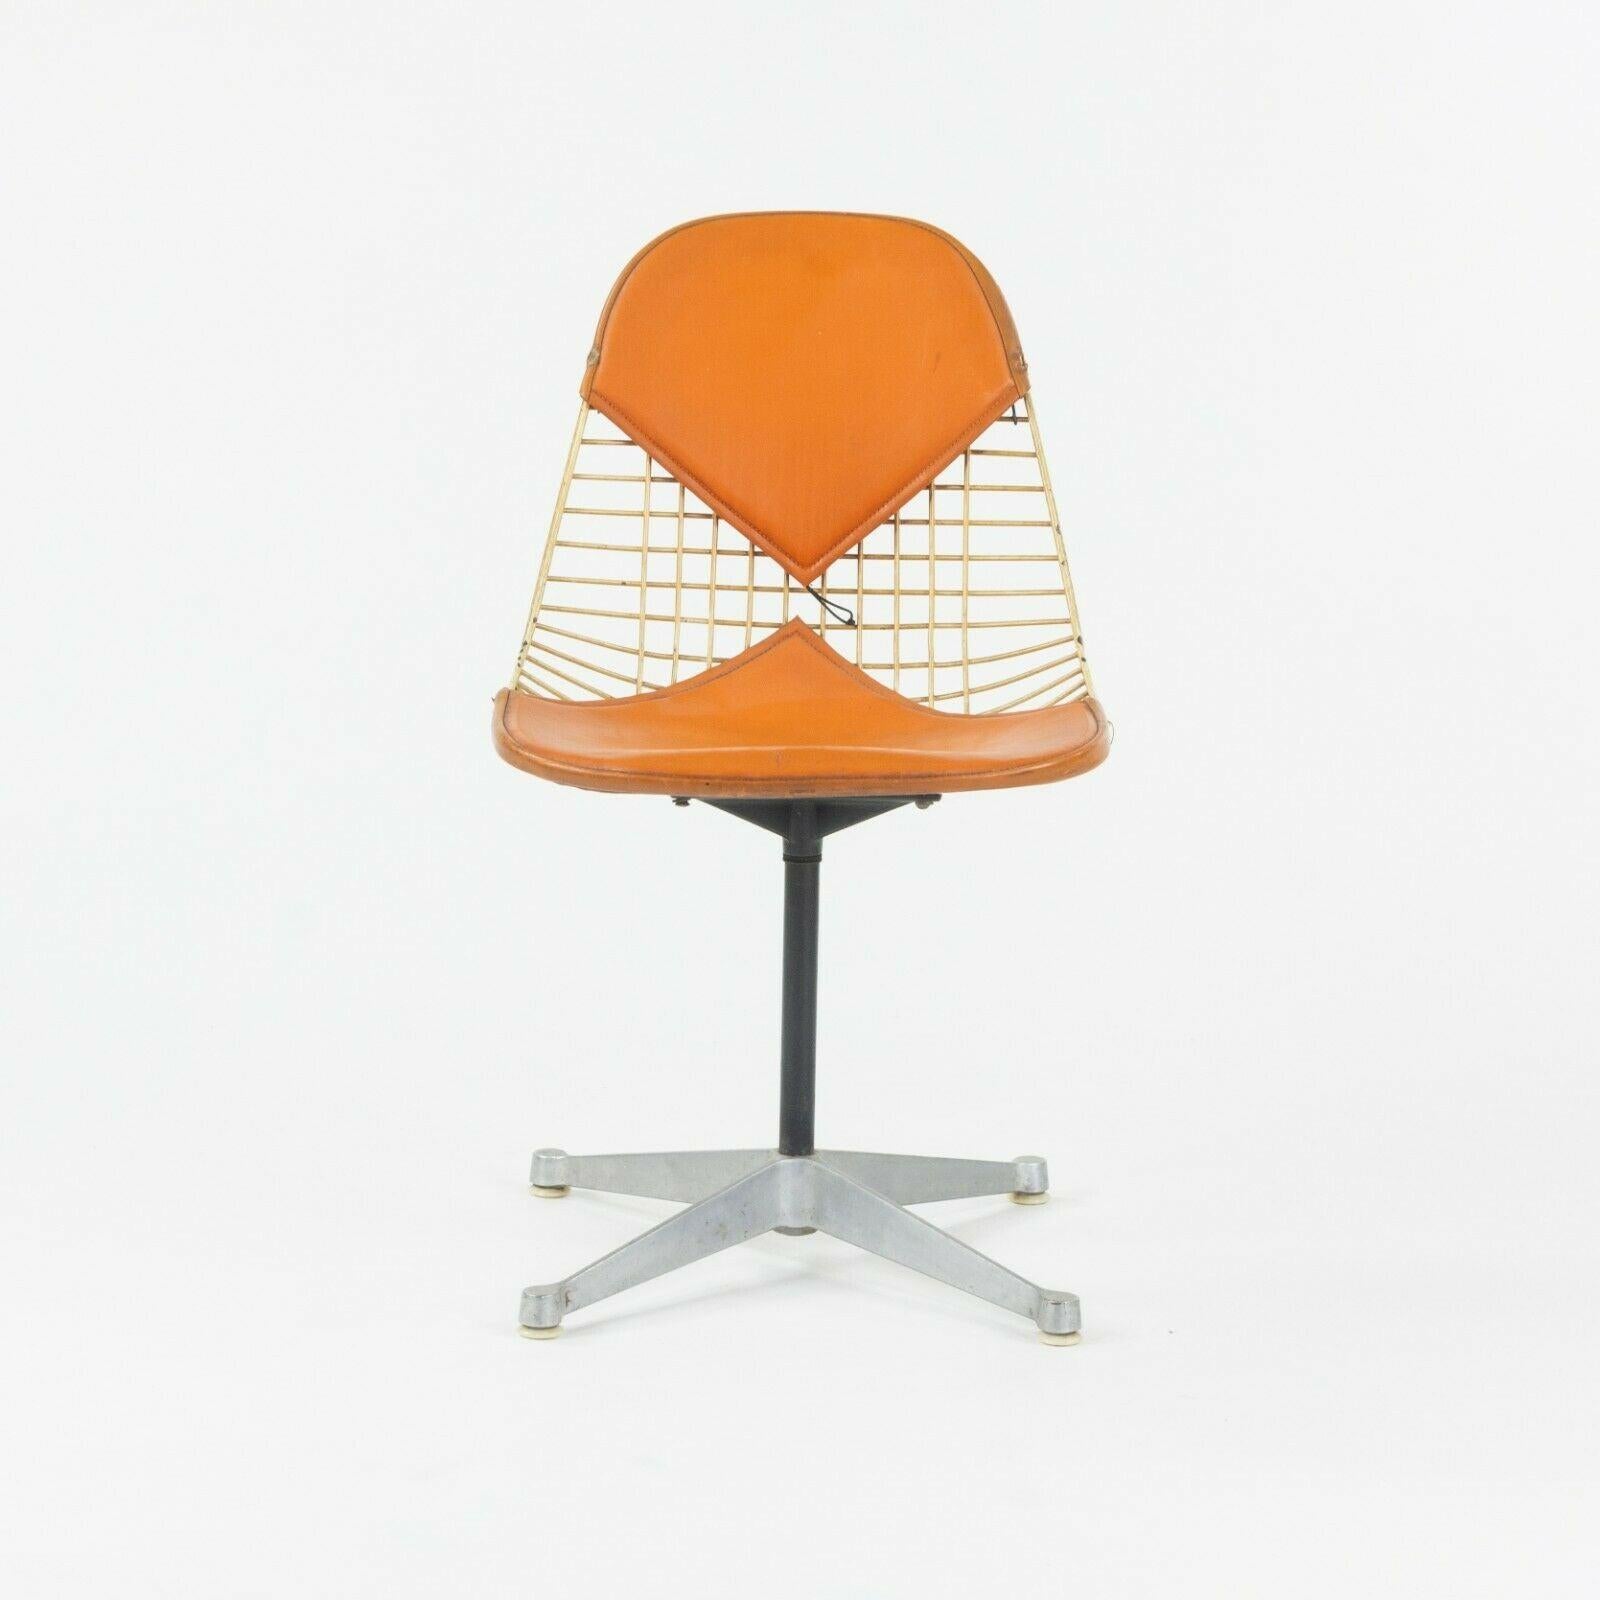 Nous proposons à la vente un ensemble très rare et original de six chaises de salle à manger / chaises d'appoint Herman Miller Eames PKC-2, conçues par Ray et Charles Eames. Cette série est spéciale pour plusieurs raisons. Tout d'abord, l'ensemble